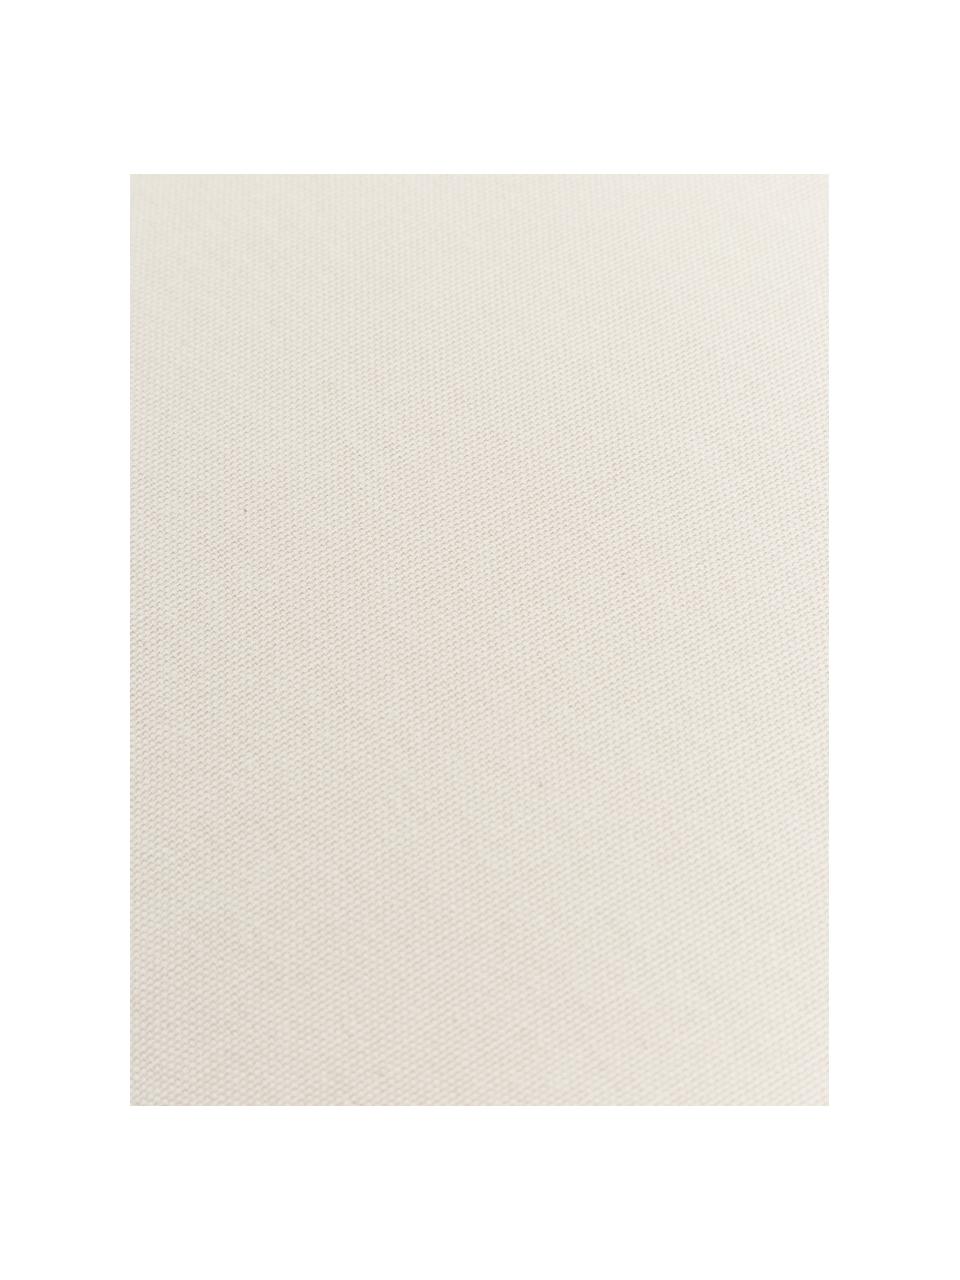 Hohes Sitzkissen Zoey, 2 Stück, Bezug: 100 % Baumwolle, Off White, B 40 x L 40 cm